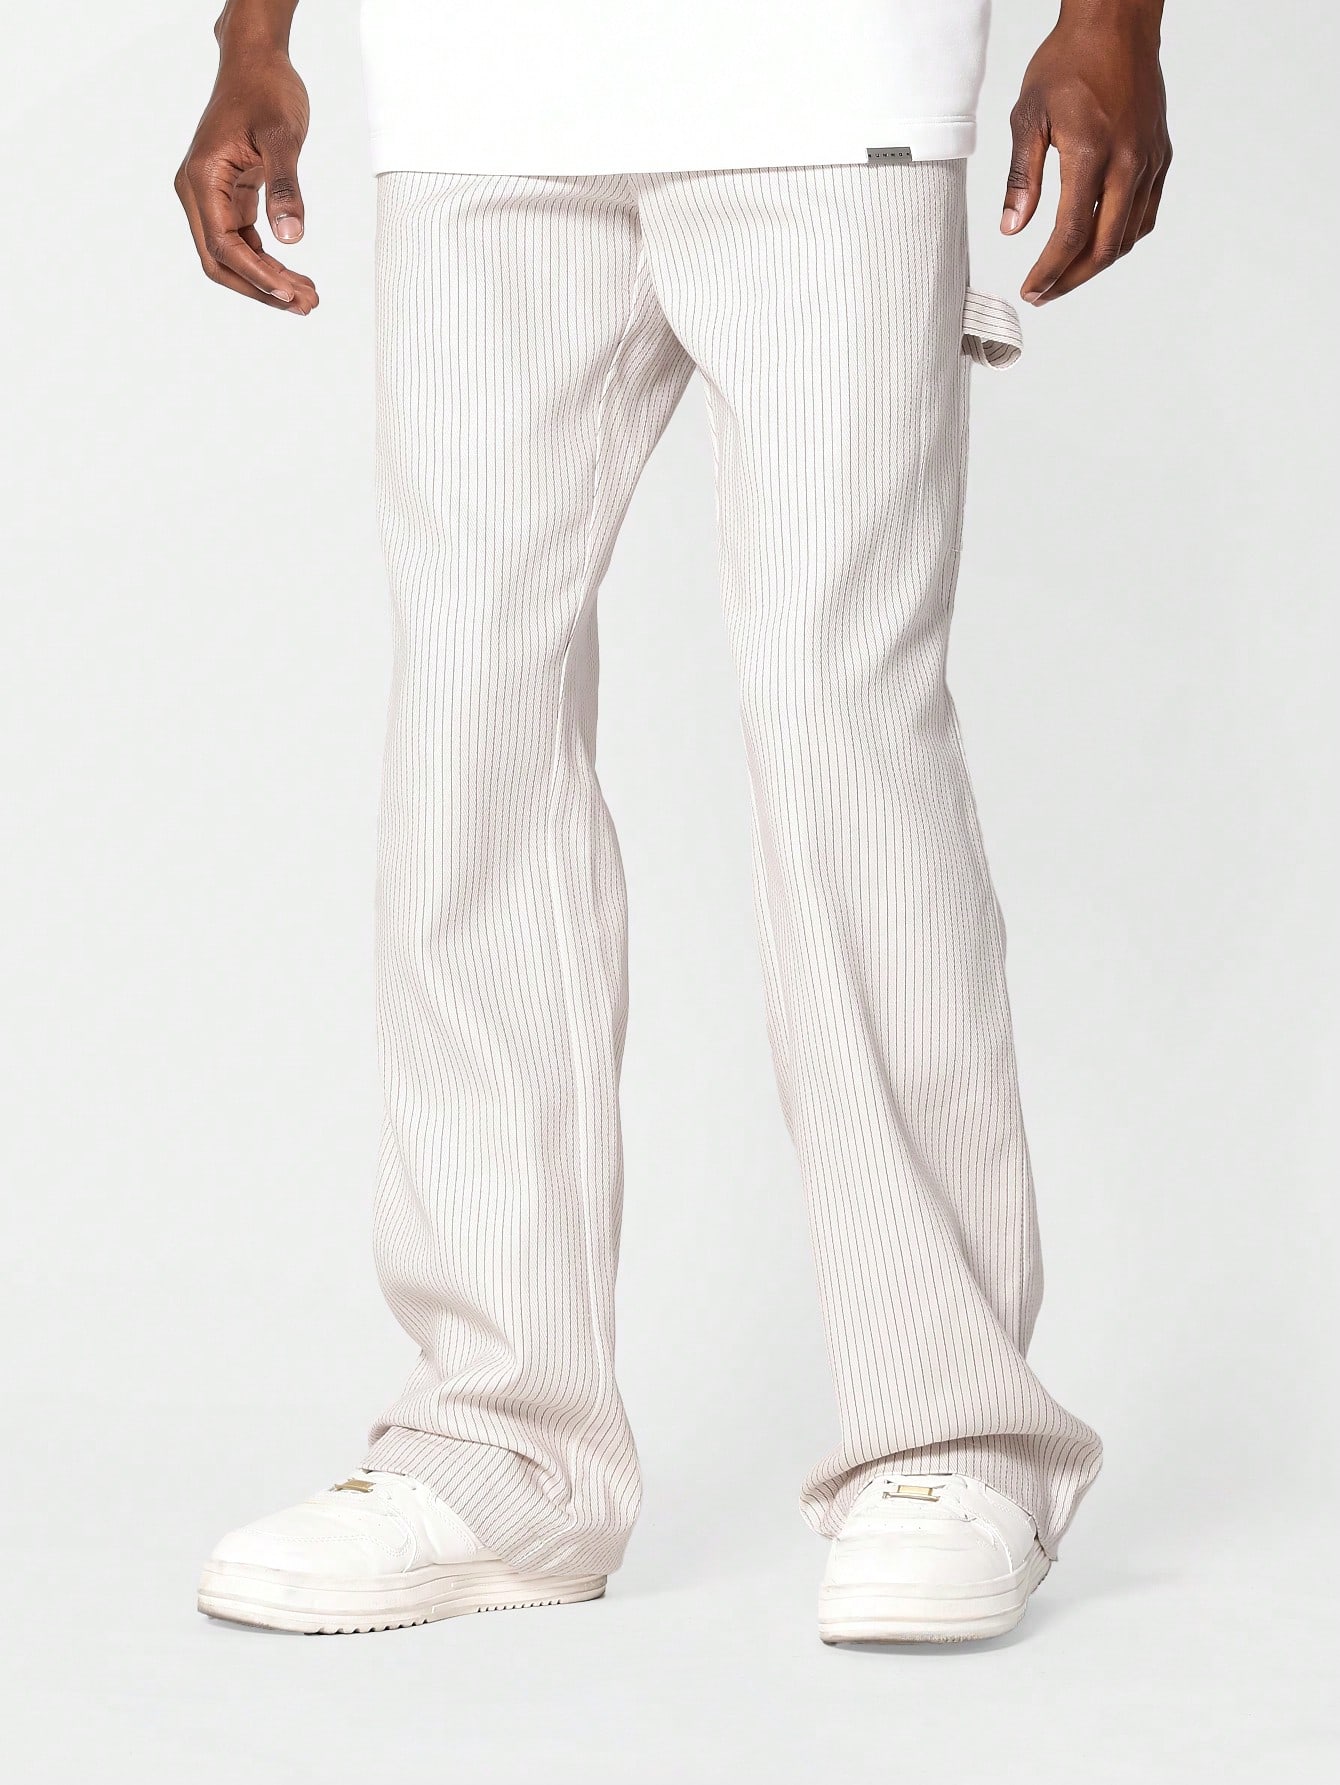 sumwon нейлоновые брюки для костюма мокко браун SUMWON Джинсы свободного кроя с полосками Carpenter, абрикос